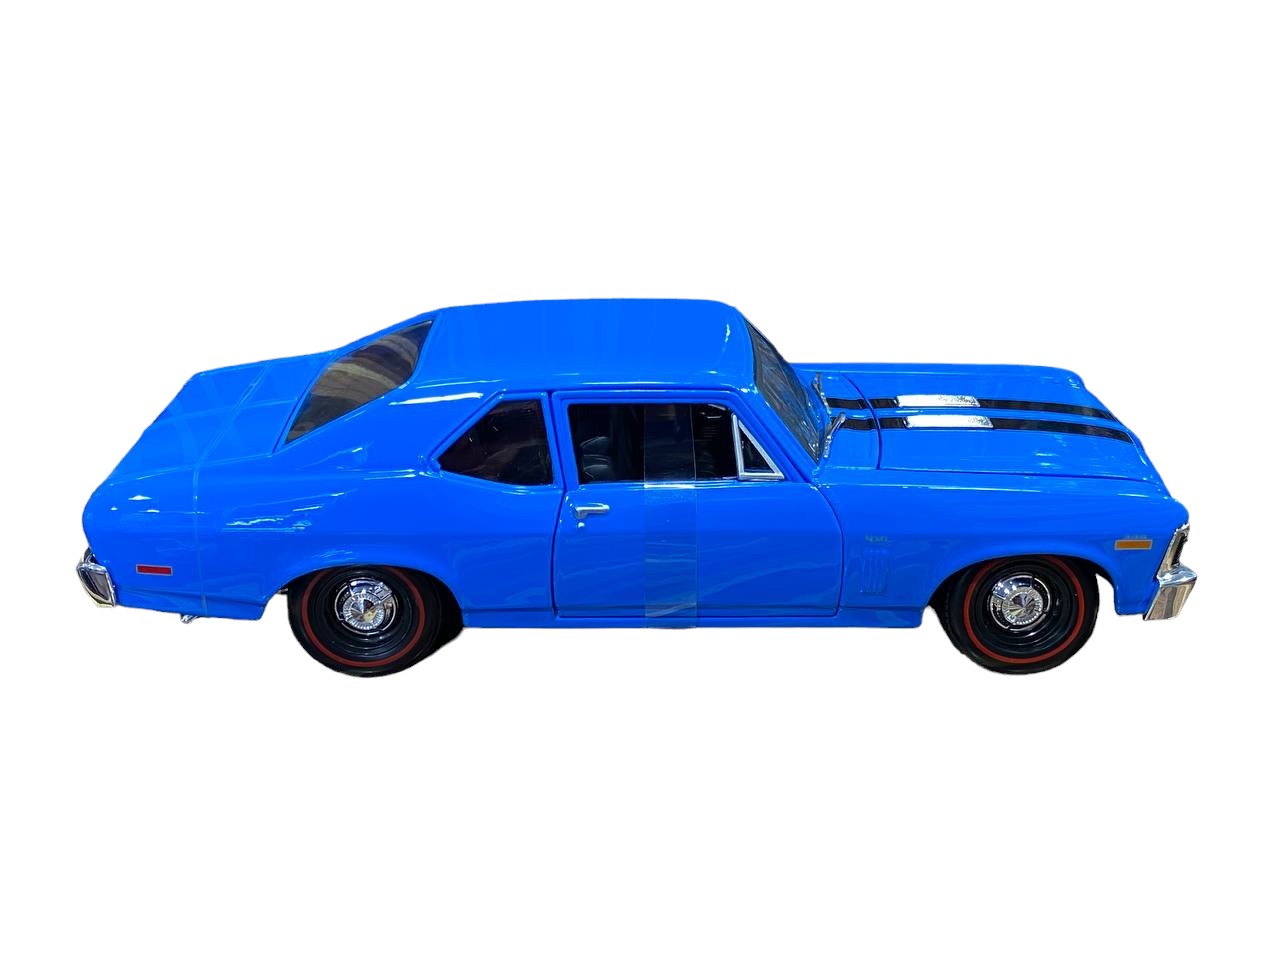 1/18 Maisto MAISTO Chevrolet Nova SS - Blue Scale Model Car